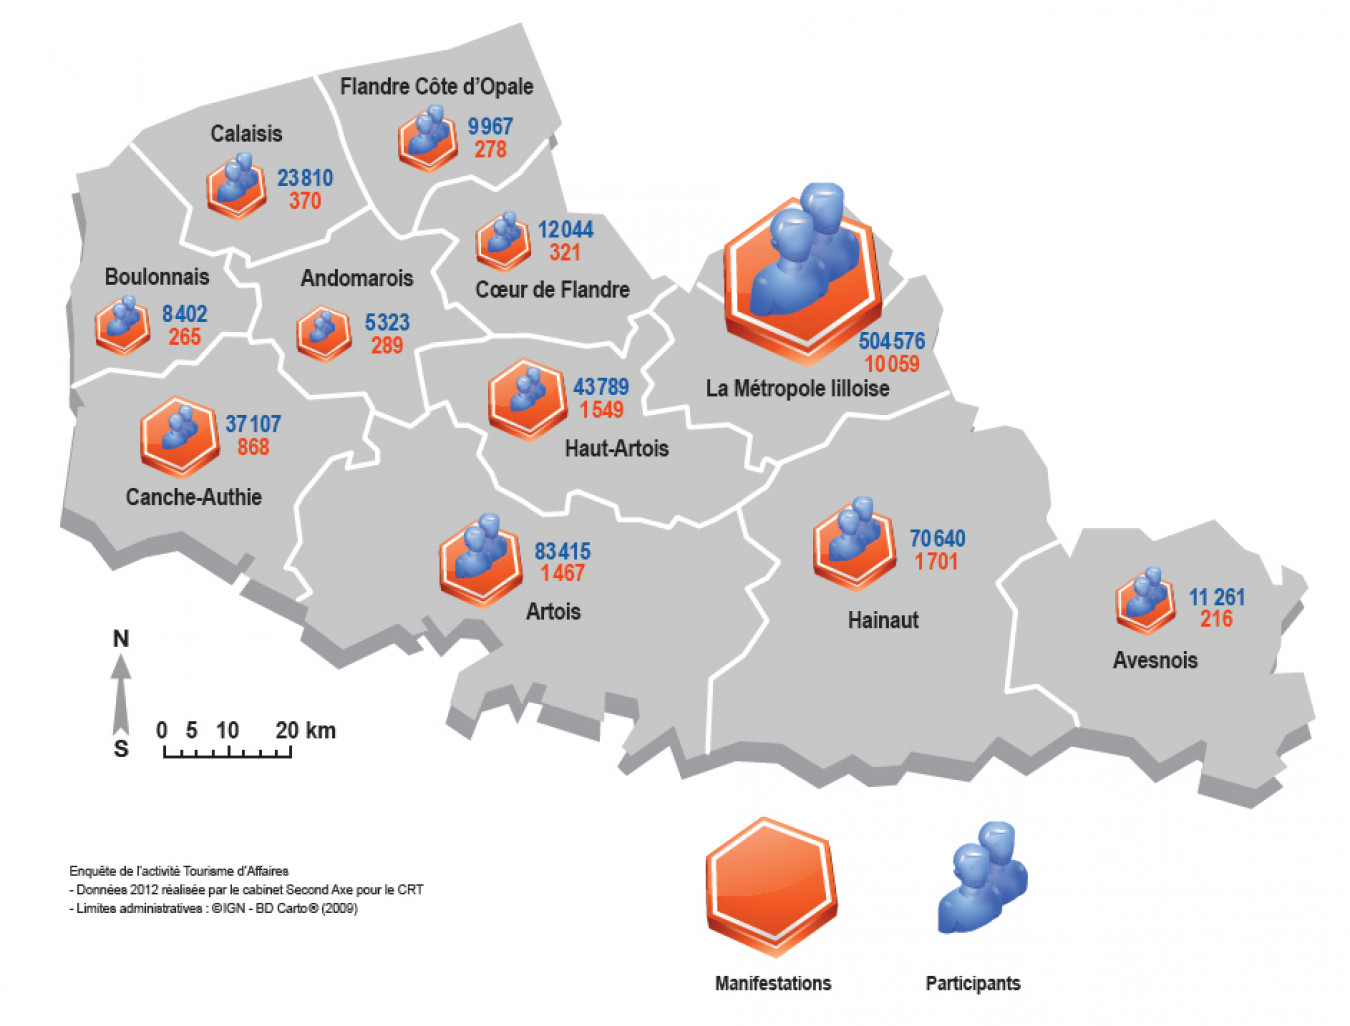 Les séminaires en région Nord-Pas-de-Calais en 2012, carte de répartition géographique des séminaires et des participants.